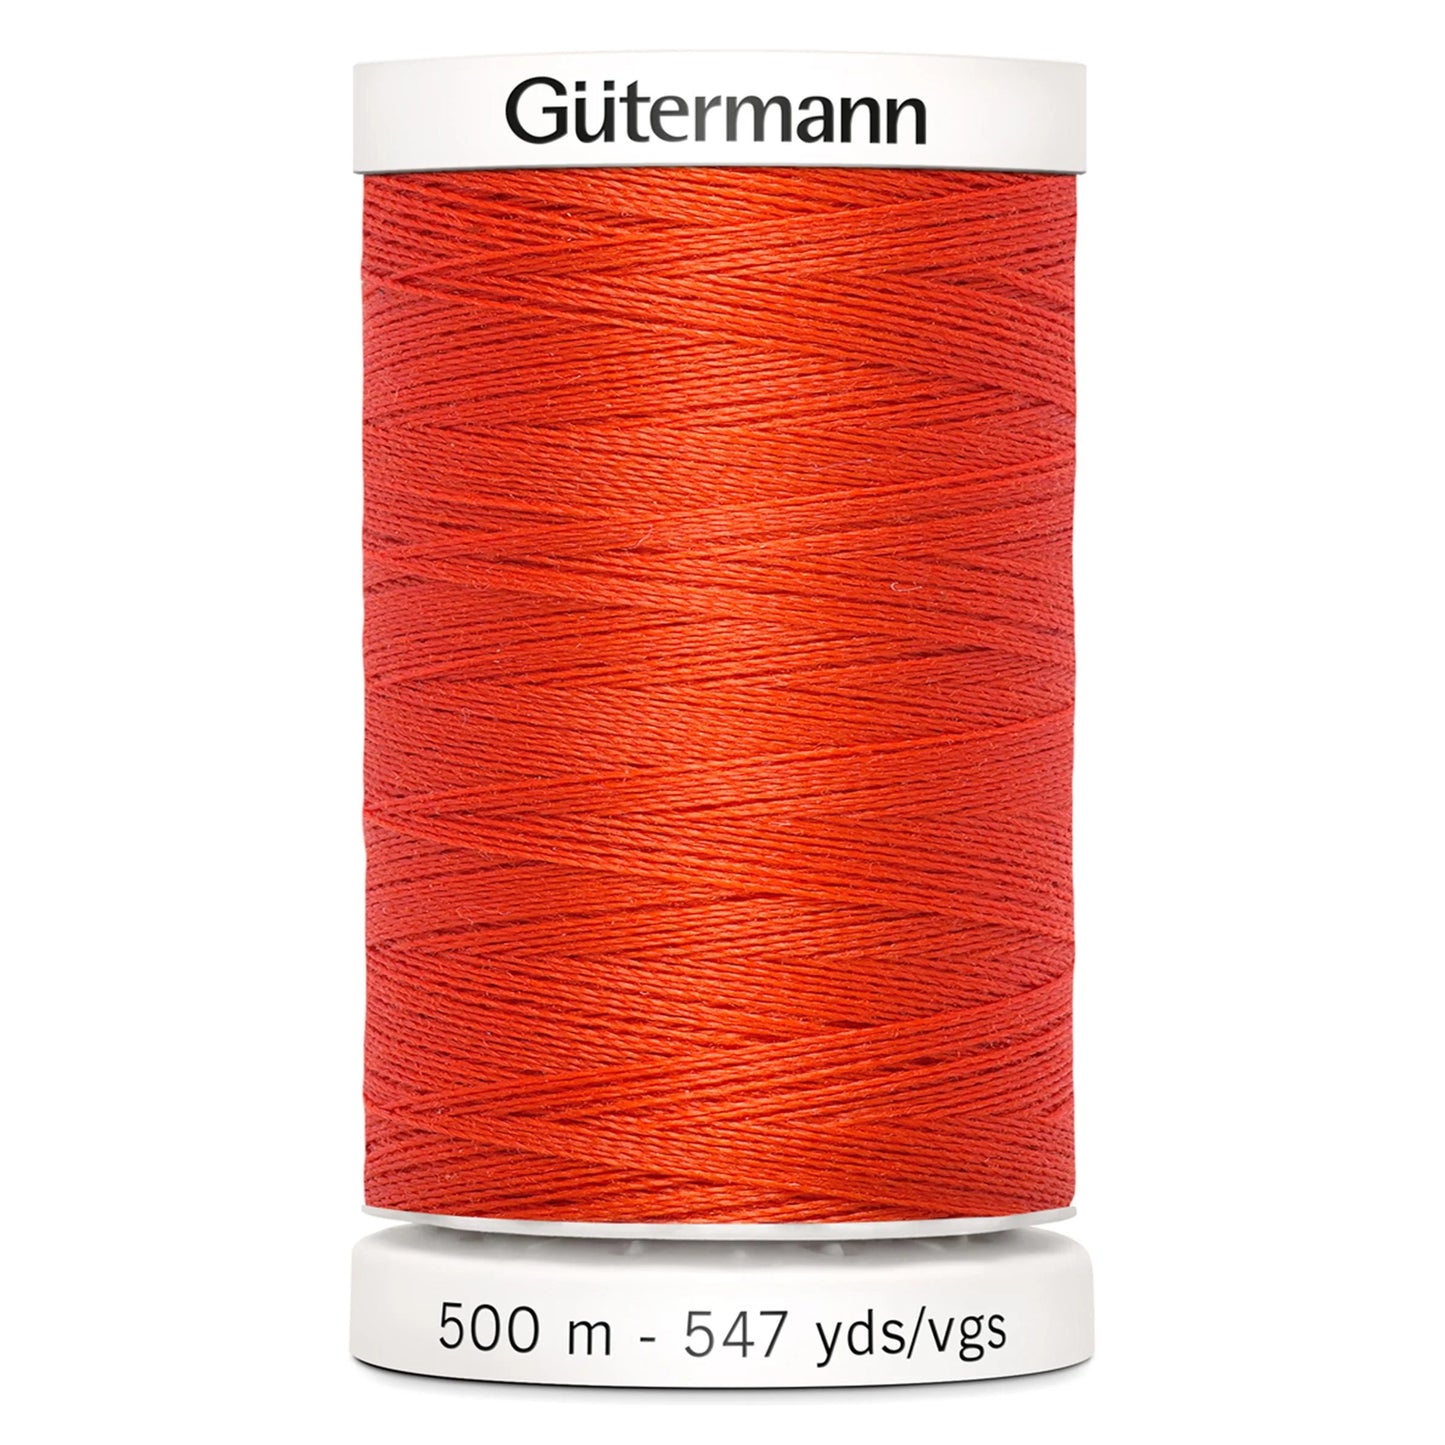 155 Gutermann Sew All Thread 500m - Orange